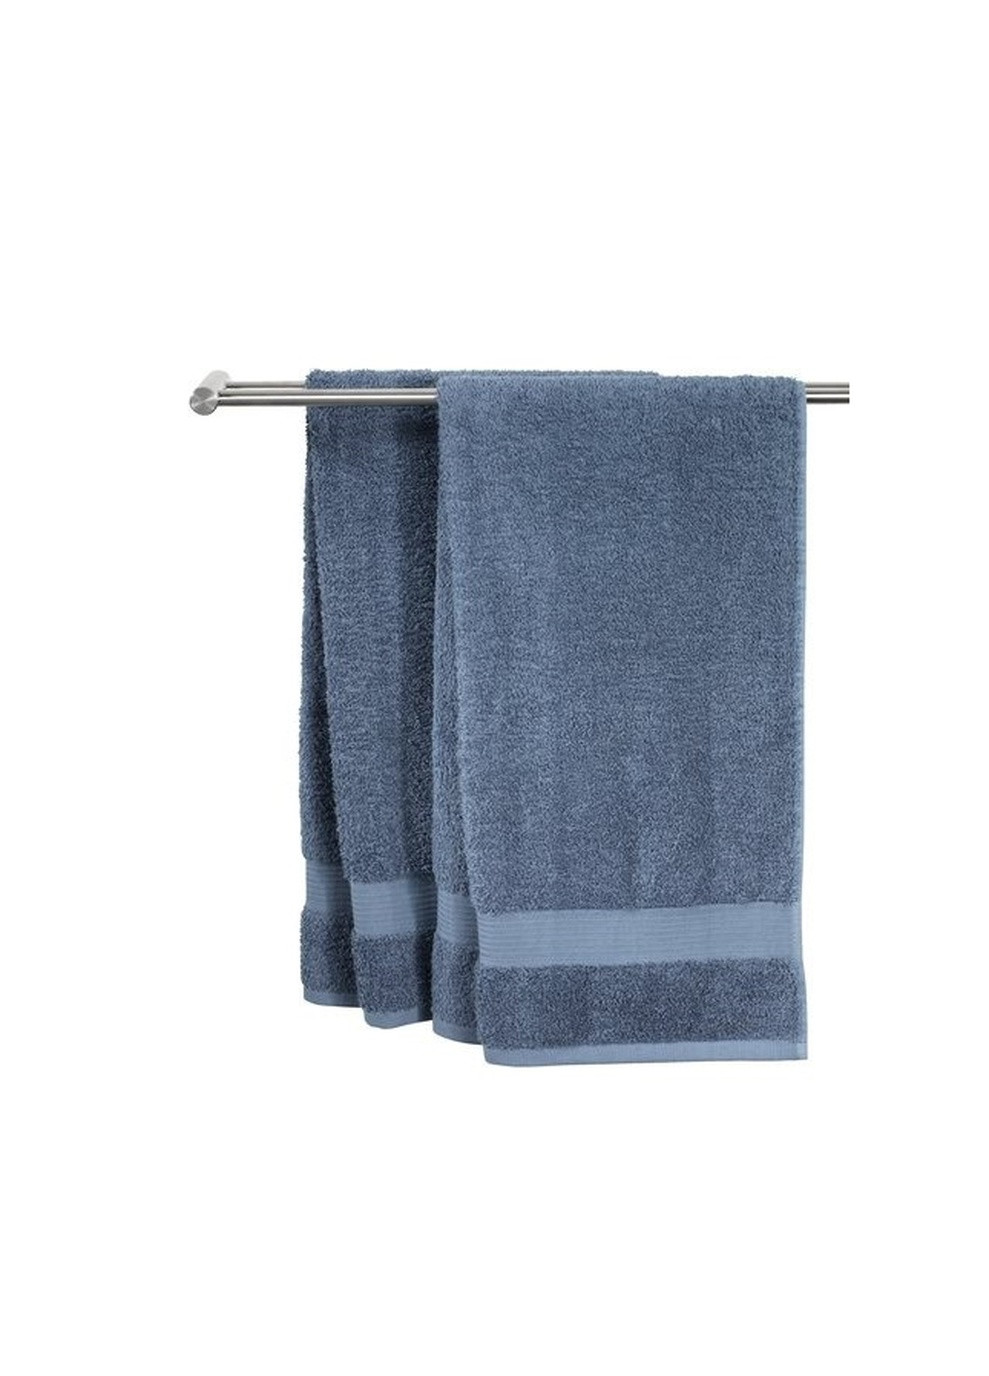 No Brand полотенце хлопок 70x140см синий синий производство - Китай